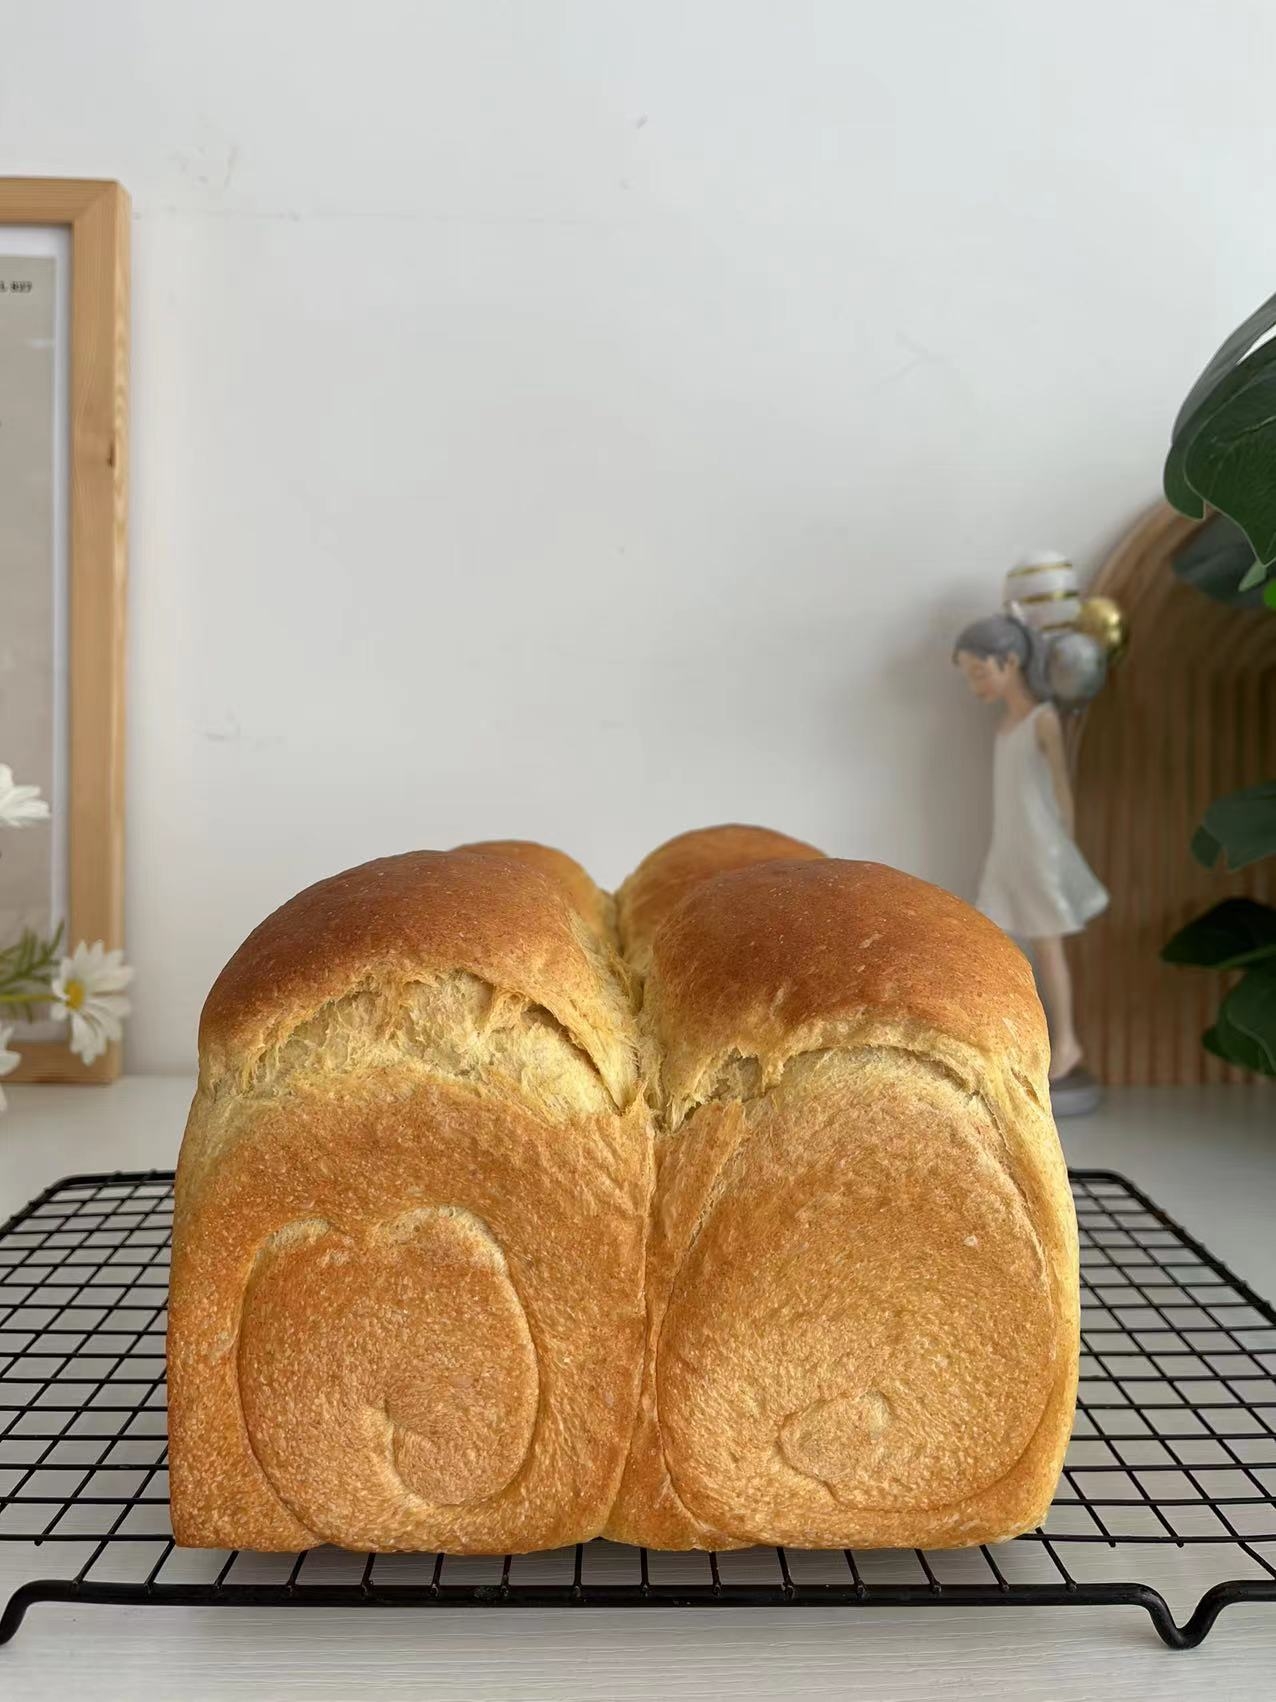 懒人1⃣键式面包机面包🍞